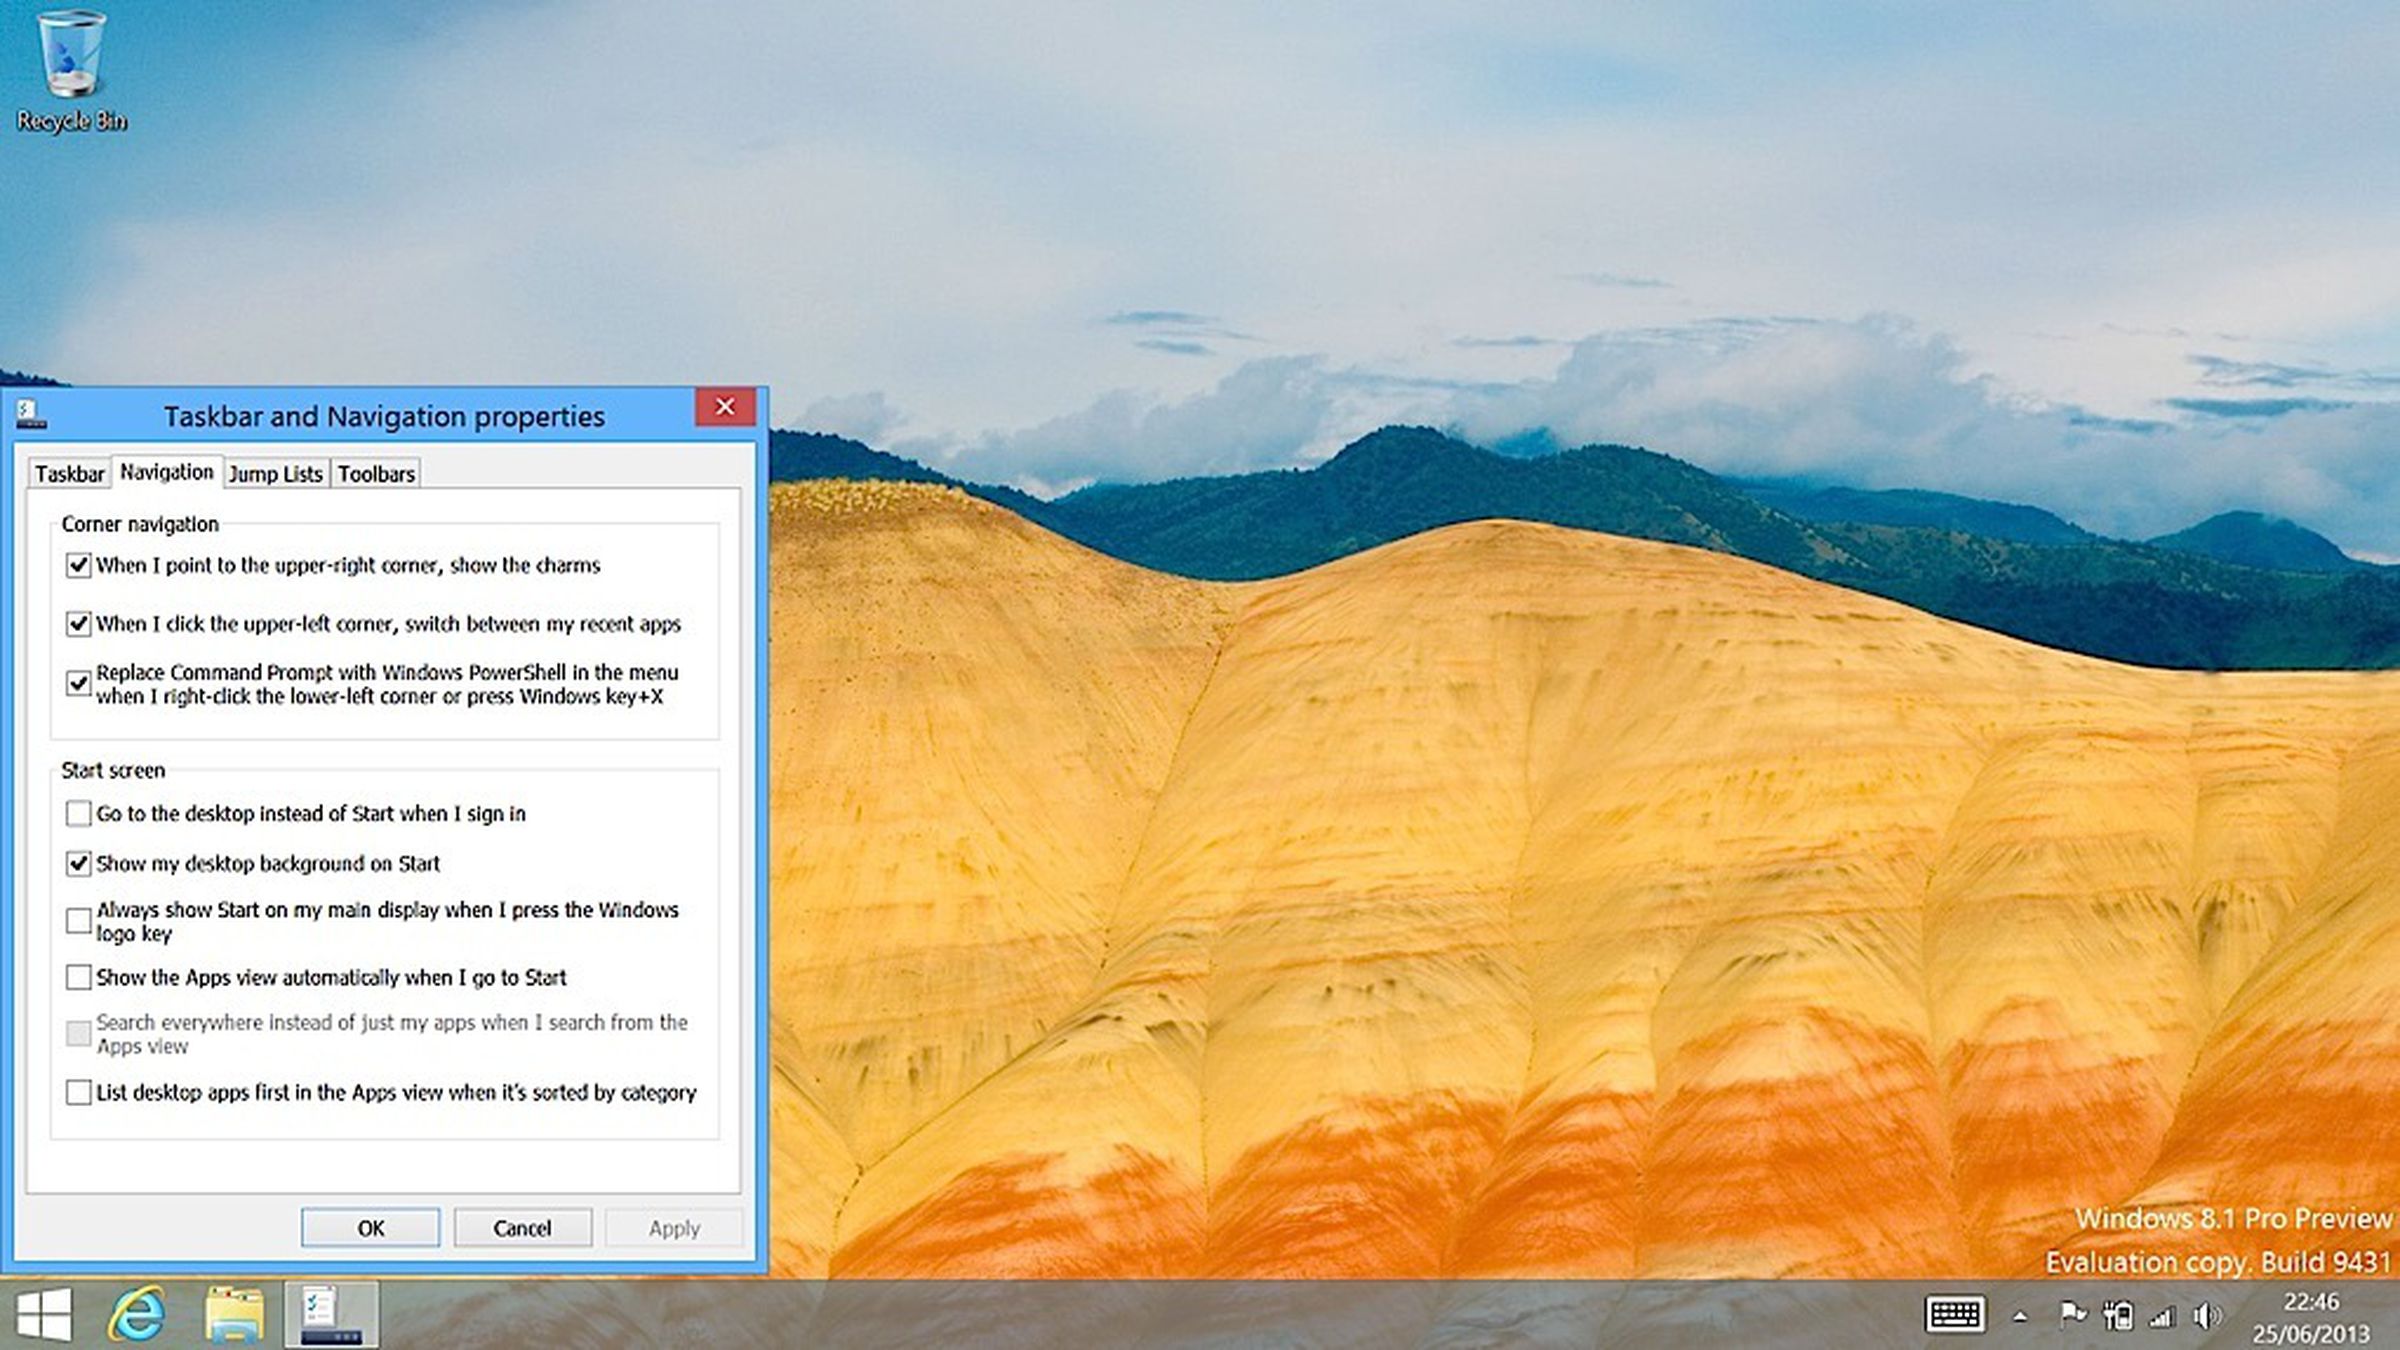 Windows 8.1 Preview screenshots